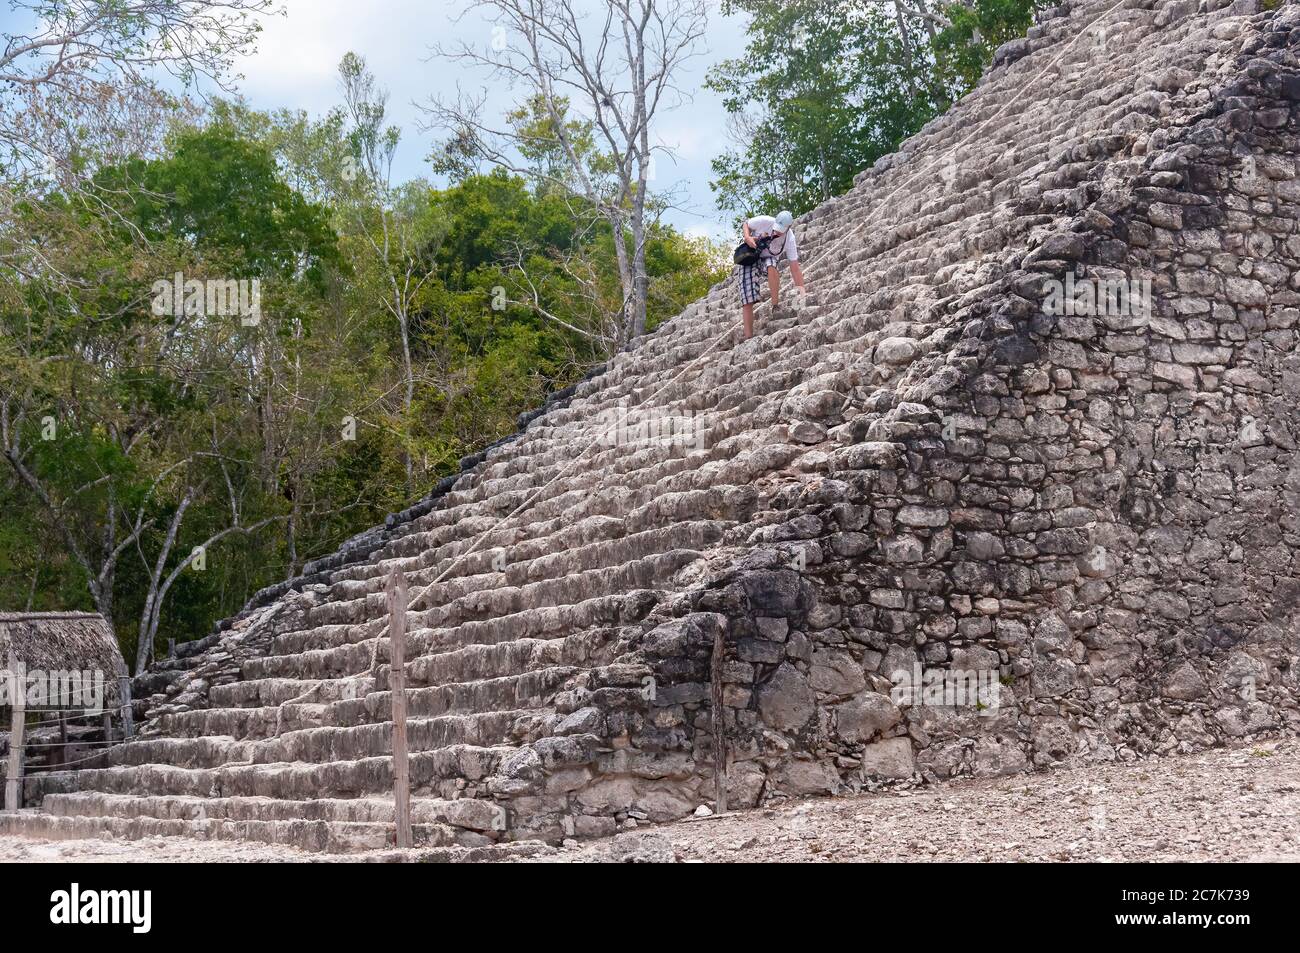 Coba, Mexico - May 16, 2011: Steep stairs of the pyramid at the Maya ruins at Coba, Mexico. Stock Photo